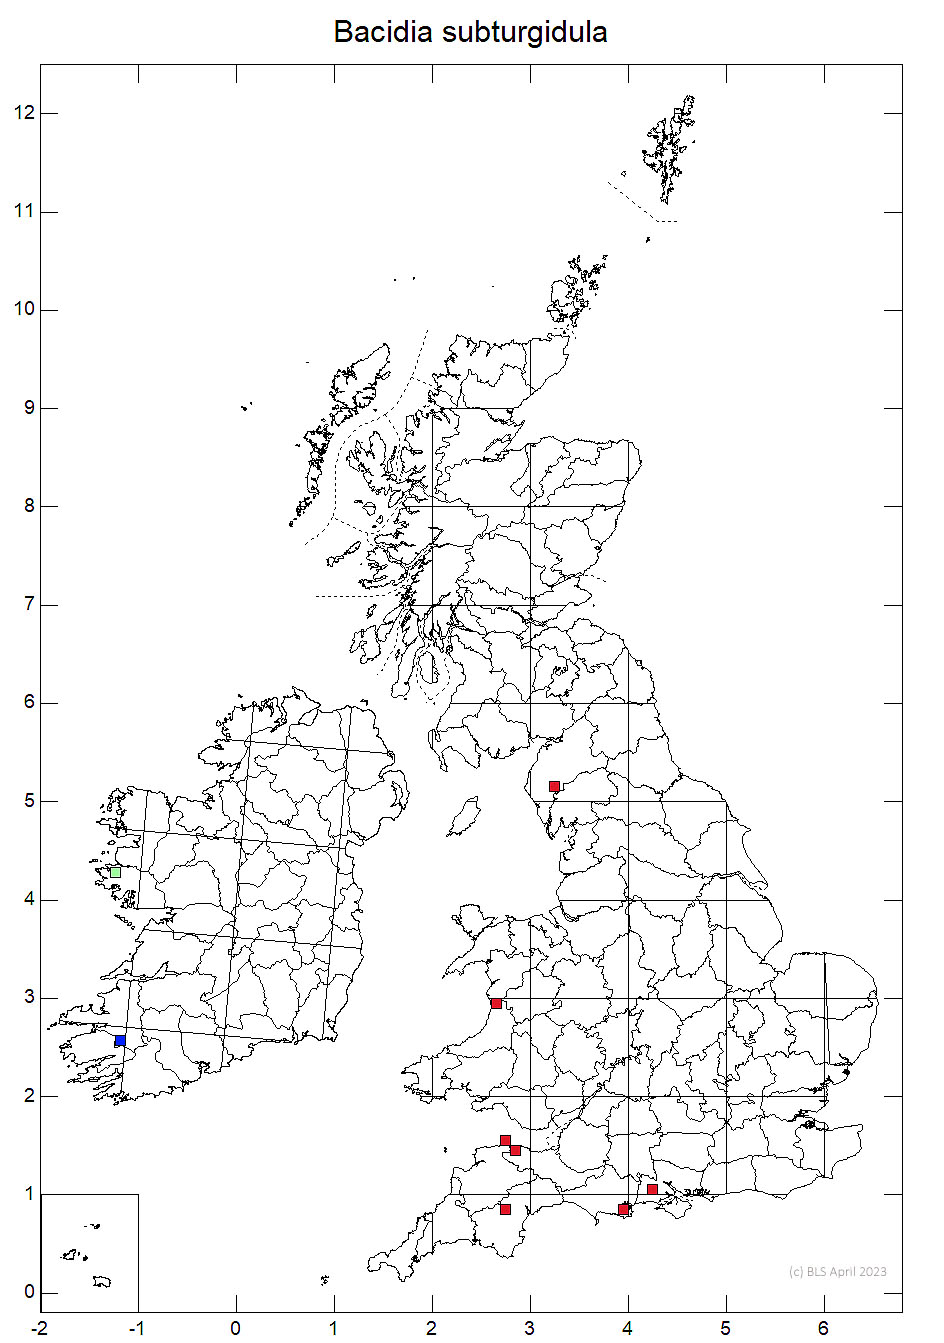 Bacidia subturgidula 10km sq distribution map